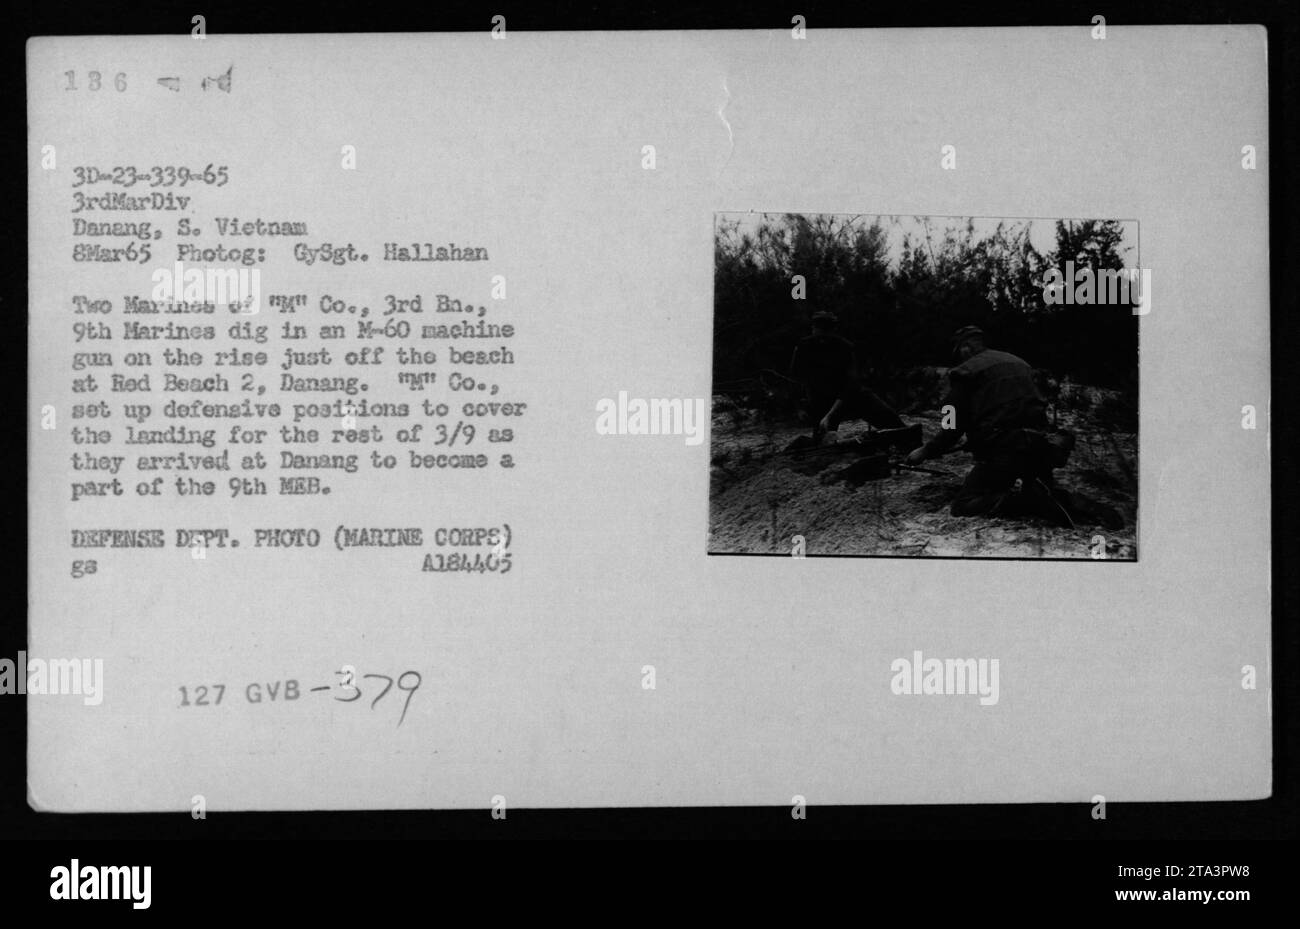 Marines aus Kompanie 3, 3. Bataillon, 9. Marines stellten am 8. März 1965 eine Verteidigungsposition am Red Beach 2 in Danang, Südvietnam, ein. Die Soldaten graben in einem M-60 Maschinengewehr, um die Ankunft des restlichen Bataillons zu decken. Foto von GySgt. Hallahan. Das ist ein Foto des US-Verteidigungsministeriums. Stockfoto